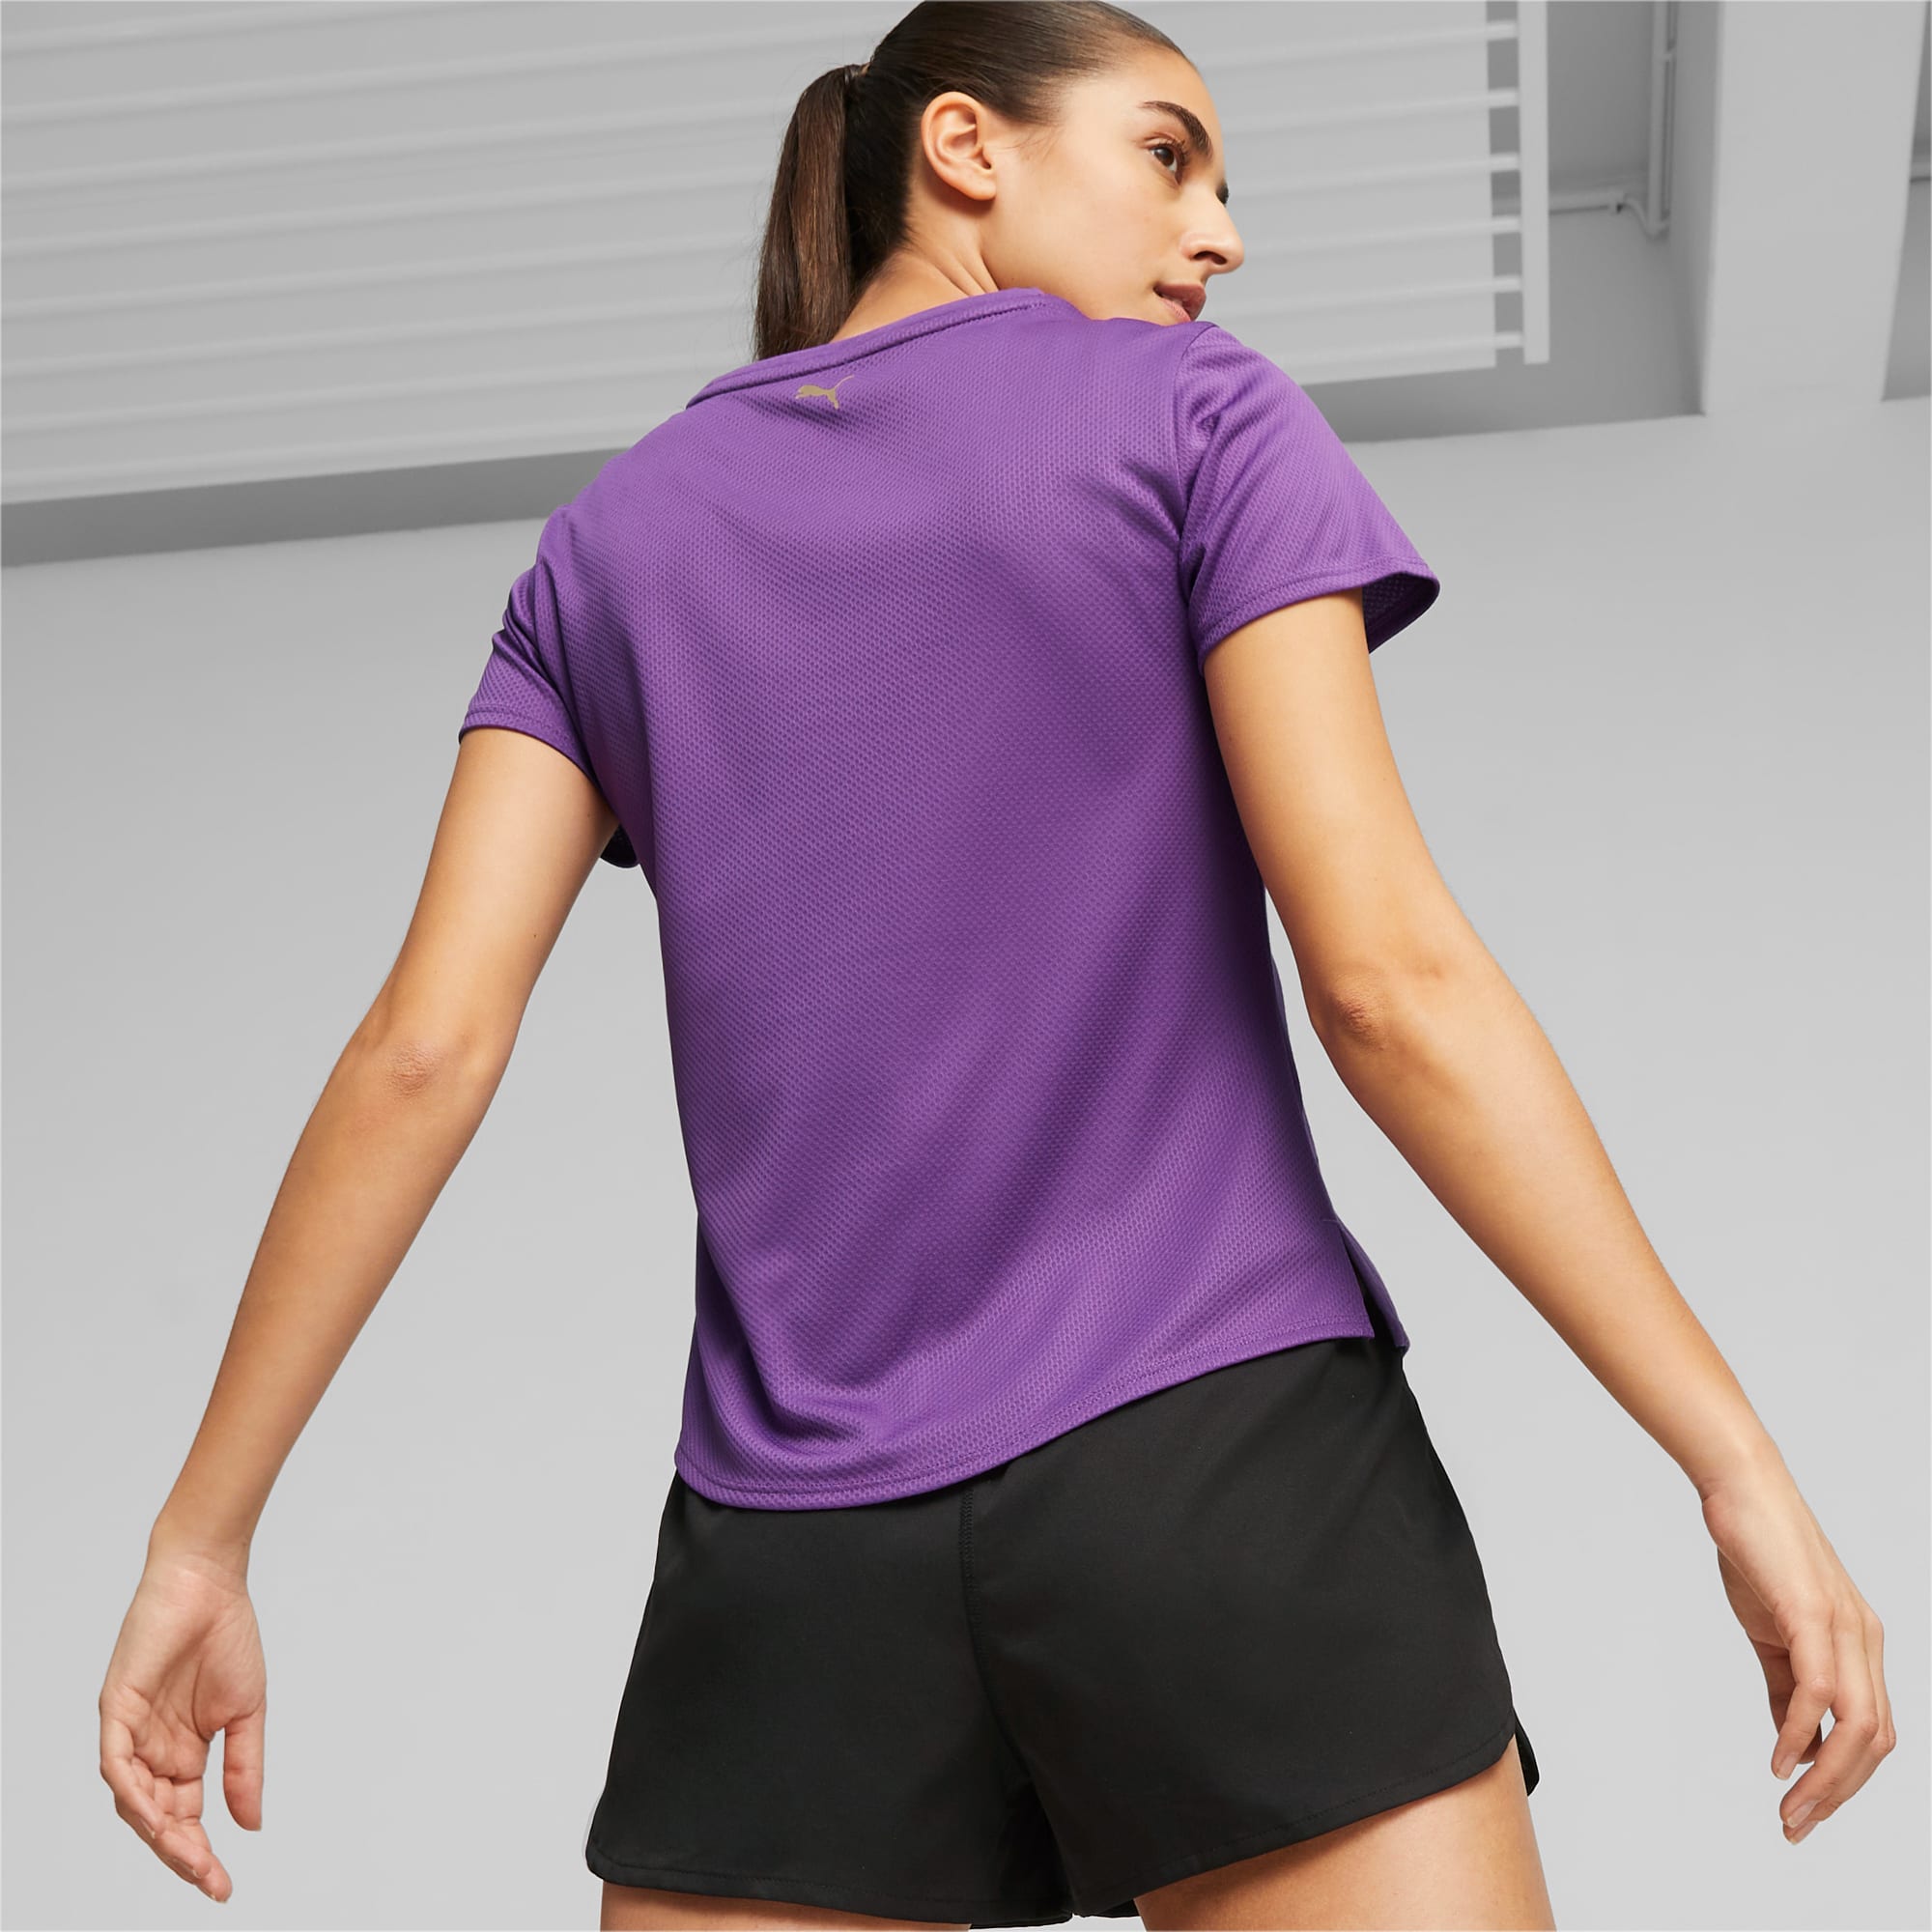 PUMA FIT Ultrabreathe Trainings-T-Shirt Damen, Lila/Gold, Größe: XL, Kleidung